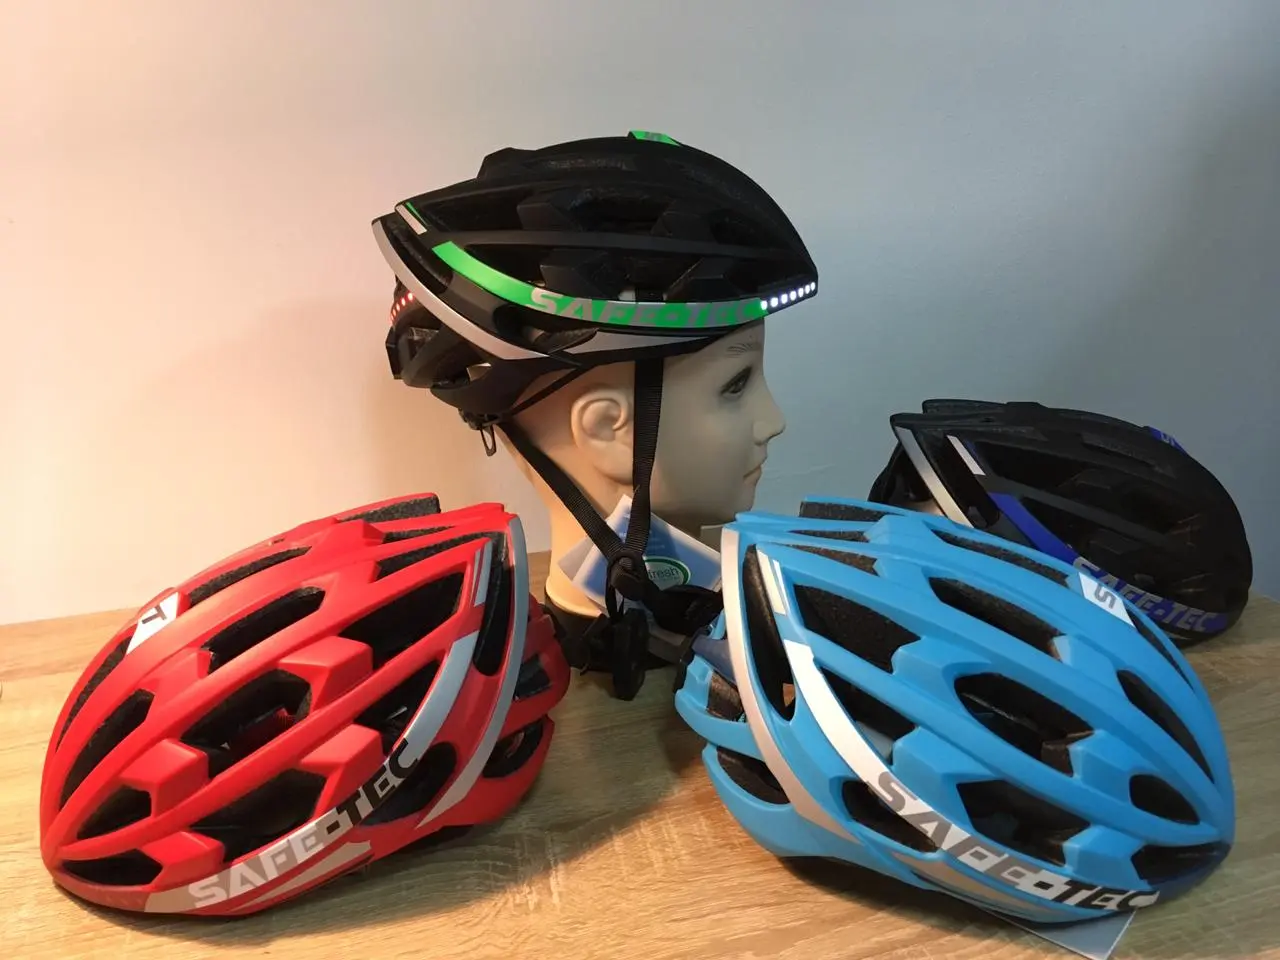 cascos inteligentes paa biciletas en chile - Cuál es la mejor marca de cascos para bicicletas